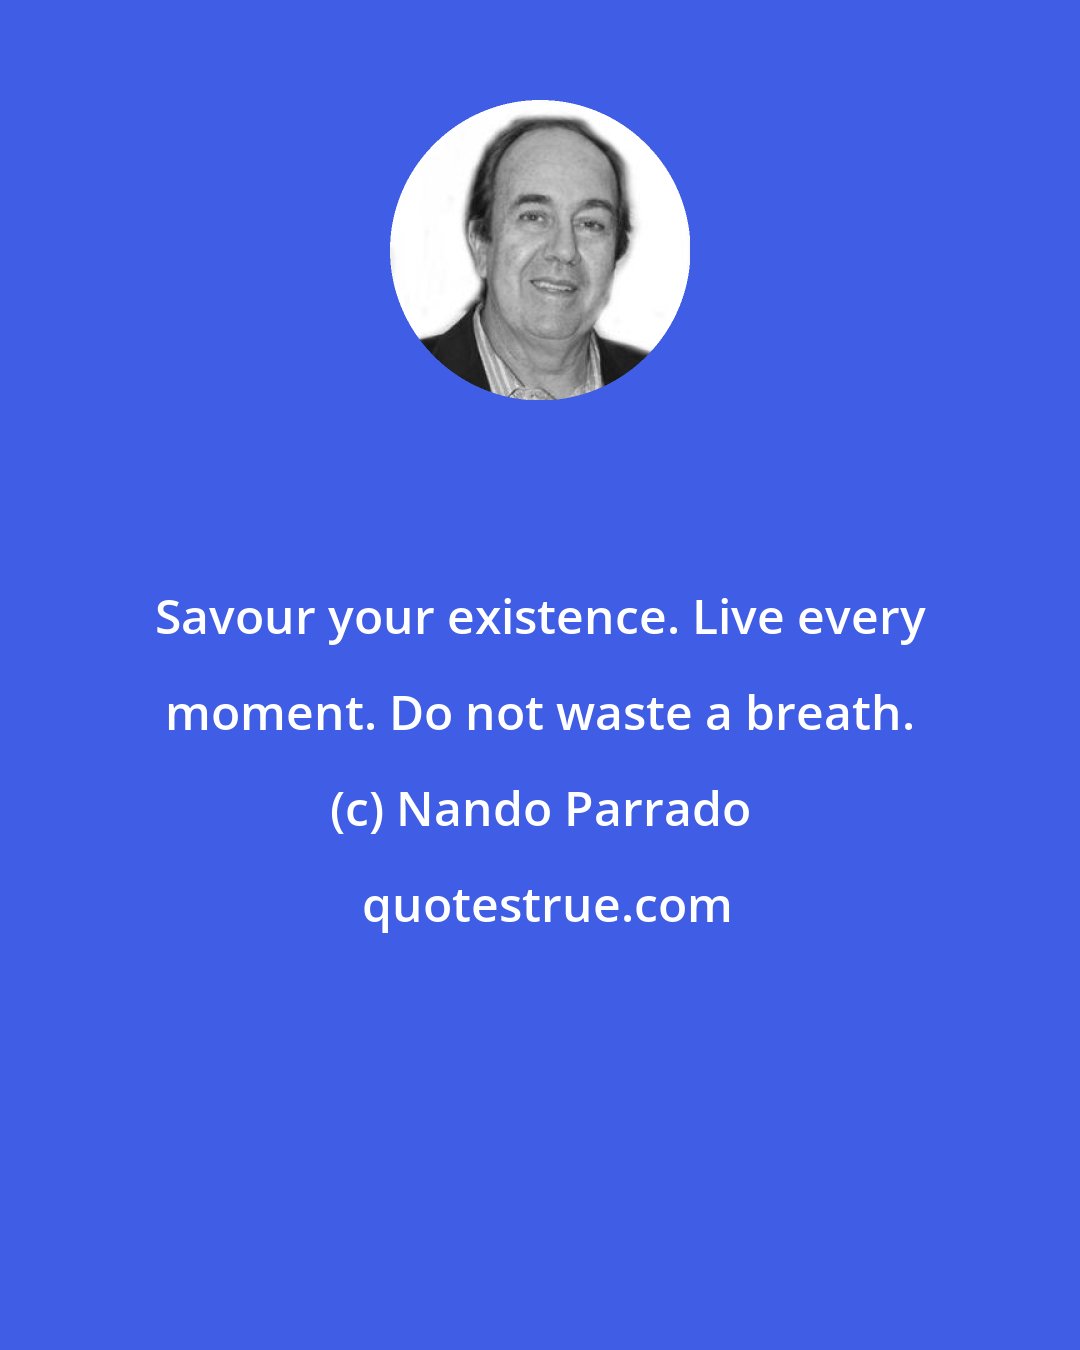 Nando Parrado: Savour your existence. Live every moment. Do not waste a breath.